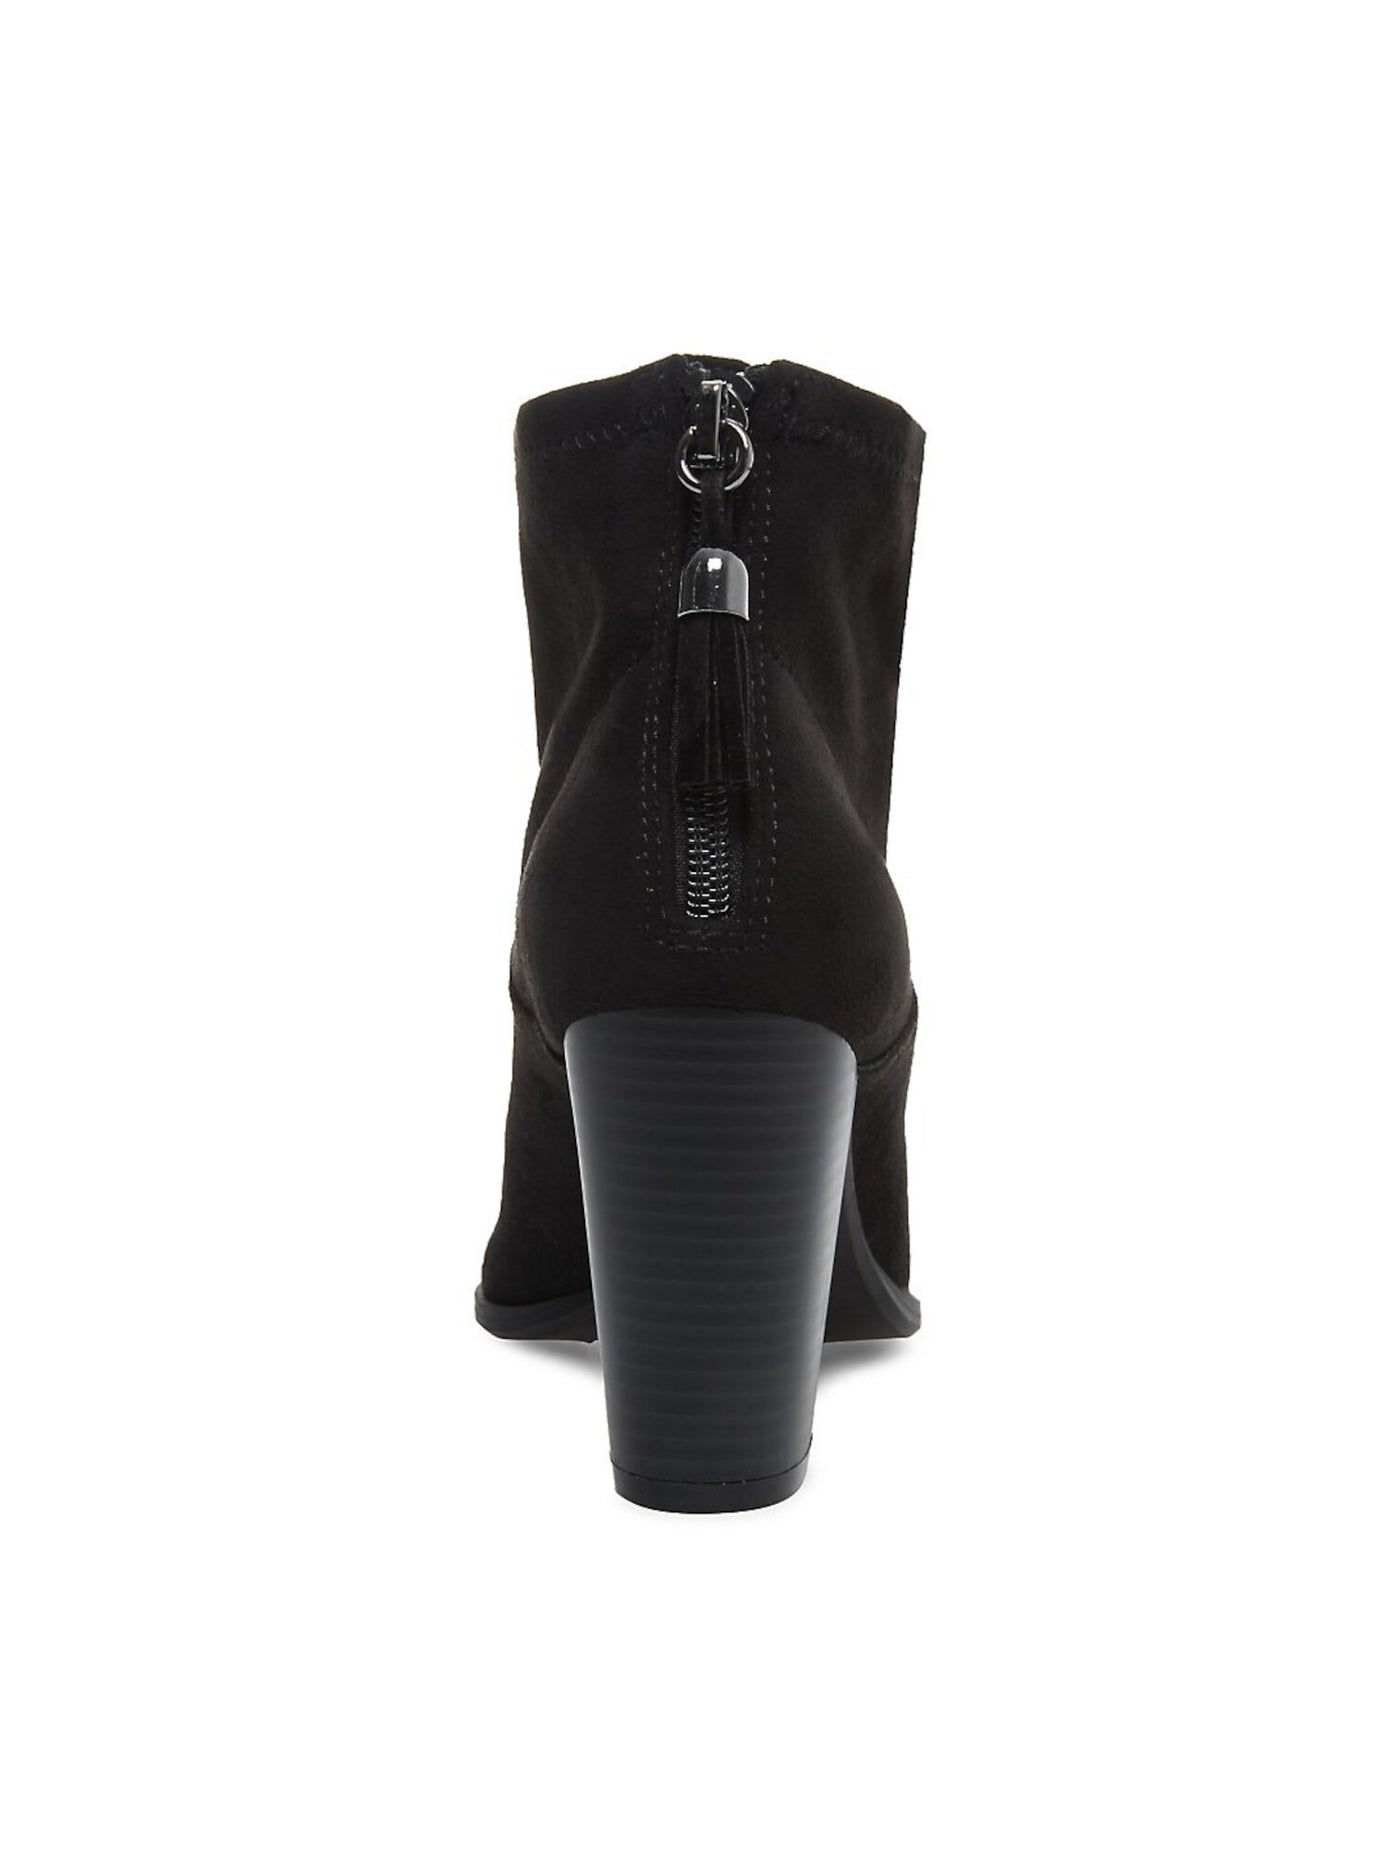 ANNE KLEIN Womens Black Shock Absorbent Tasseled Cushioned Niccie Almond Toe Block Heel Zip-Up Leather Booties 6 M